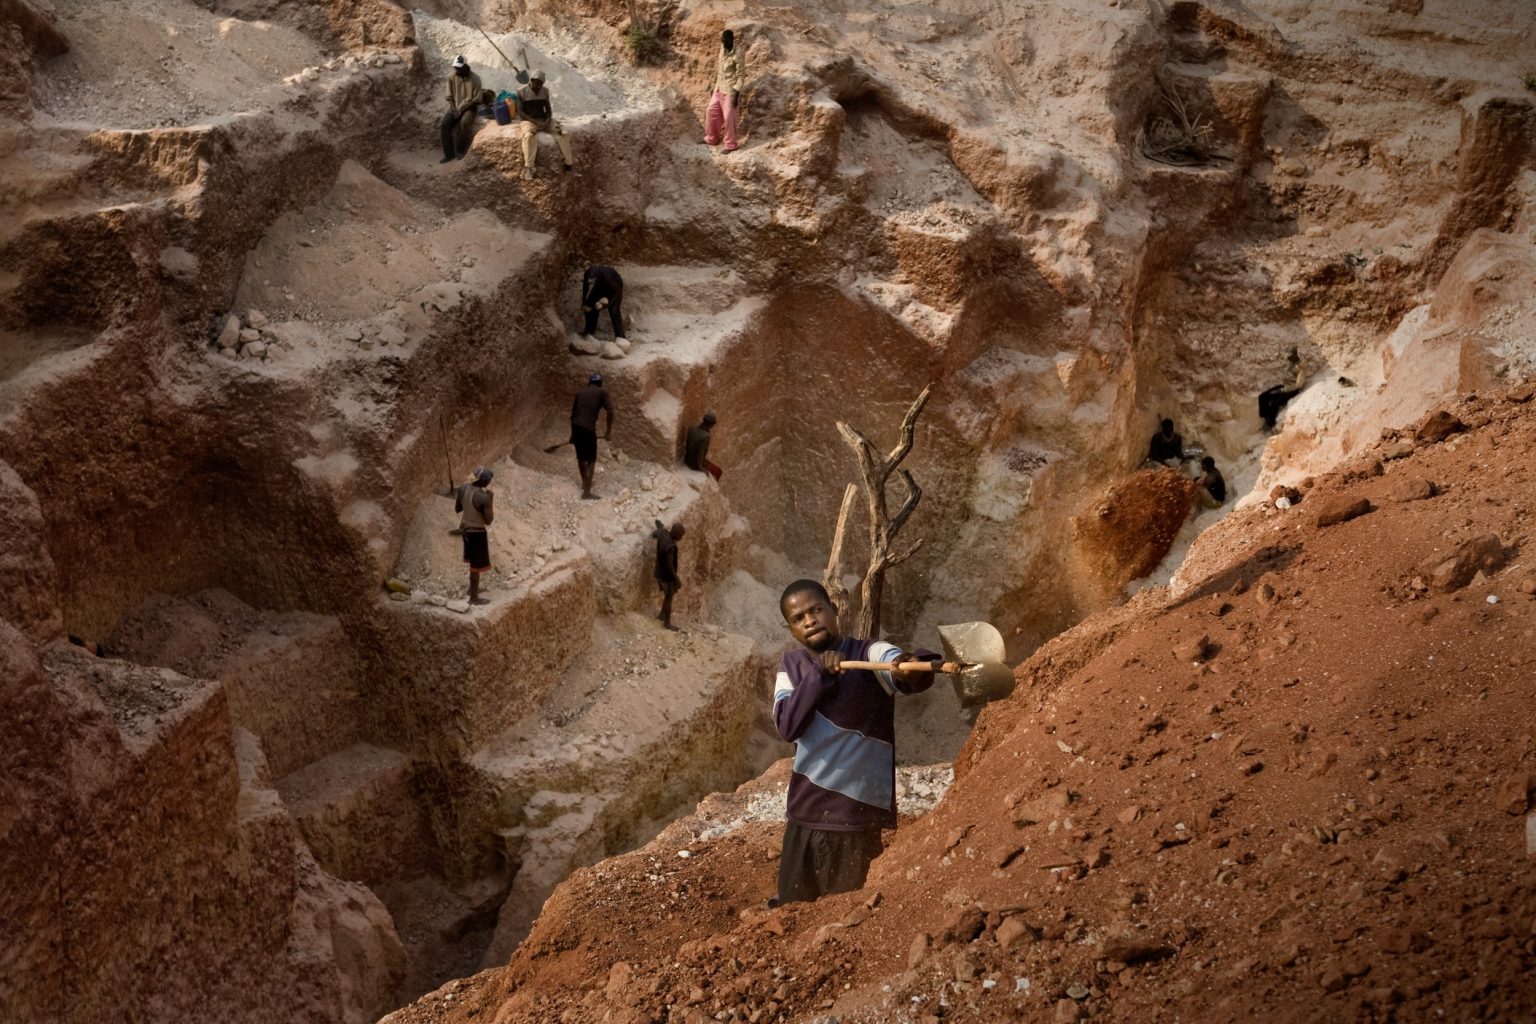 DRC, Katanga
Carriére "100 Kilo"
Agosto 2008
"La miniera della morte". In questa miniera di Coltan nel 2007 c'è stata una frana che ha causato la morte di 11 persone. Da qui il nome.

DRC, Katanga
Carriére "100 Kilo"
August 2008
"Mine of death" this is how miners call this  coltan mine. In this mine in 2007 a landslide killed 11 people.